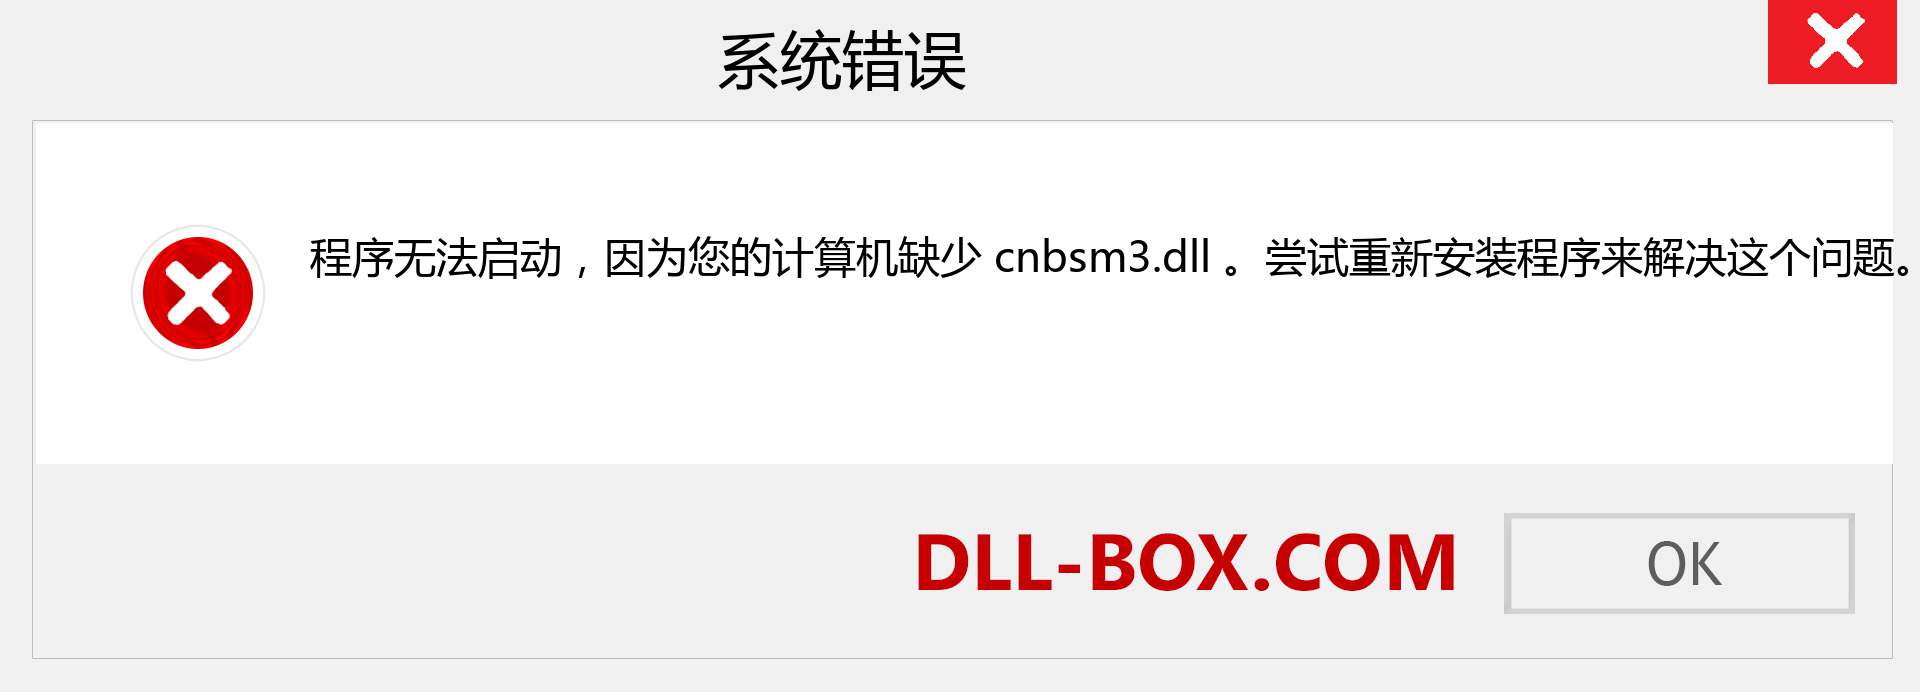 cnbsm3.dll 文件丢失？。 适用于 Windows 7、8、10 的下载 - 修复 Windows、照片、图像上的 cnbsm3 dll 丢失错误